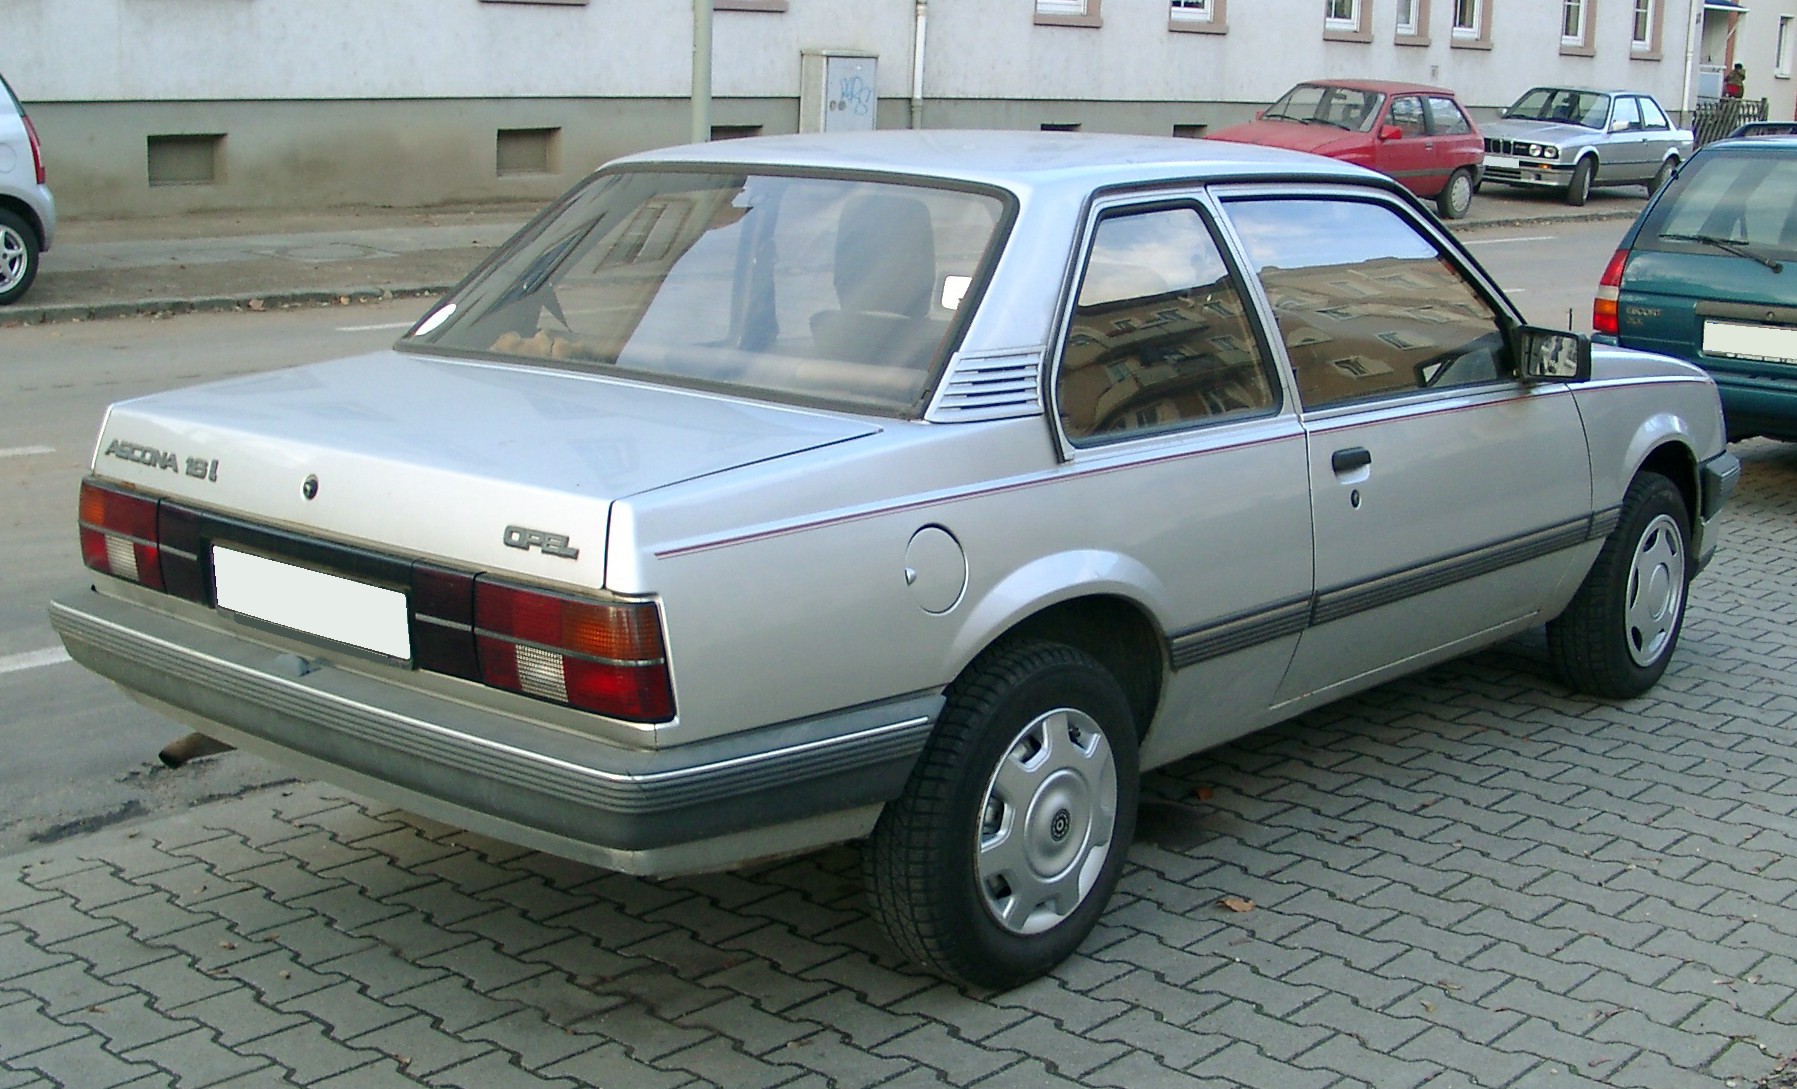 File:Opel Ascona rear 20071115.jpg